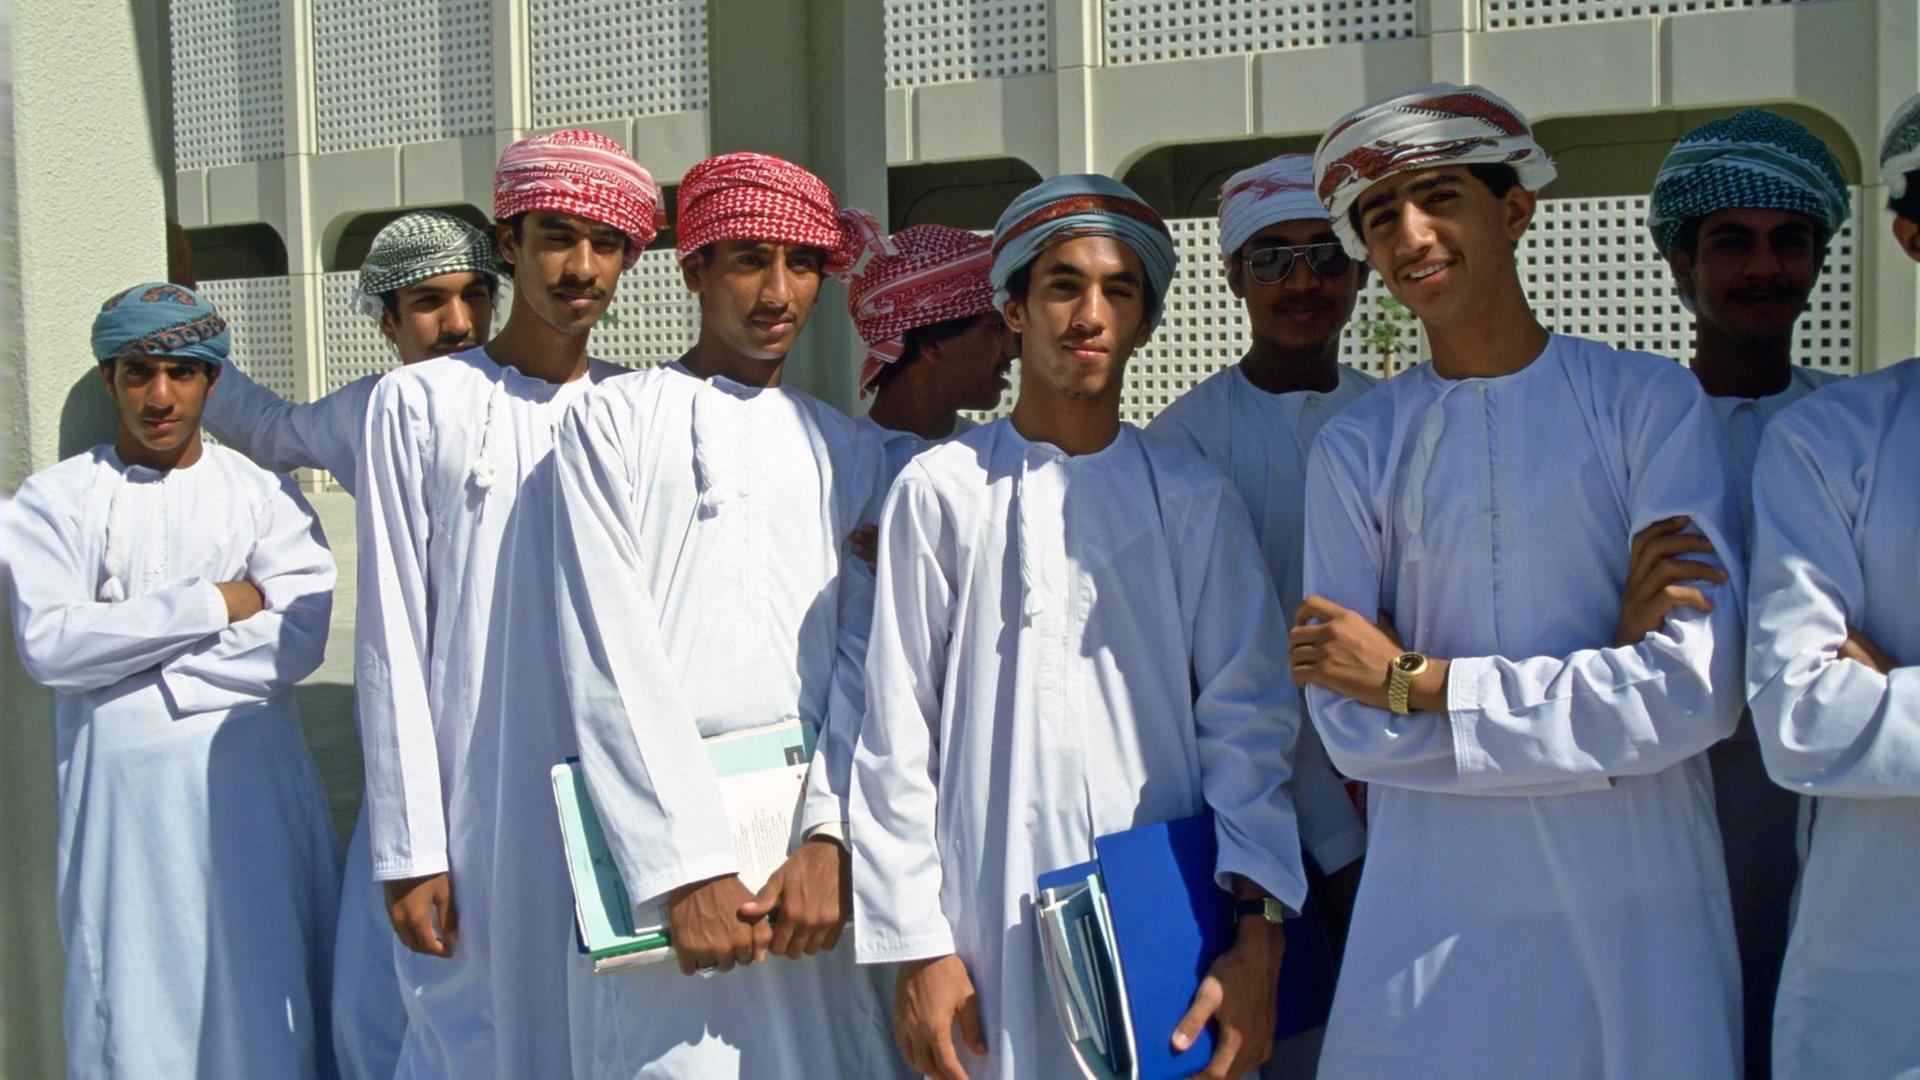 Studenten einer Universität im Oman stehen in traditioneller Kleidung vor einem Gebäude (Symbolbild)